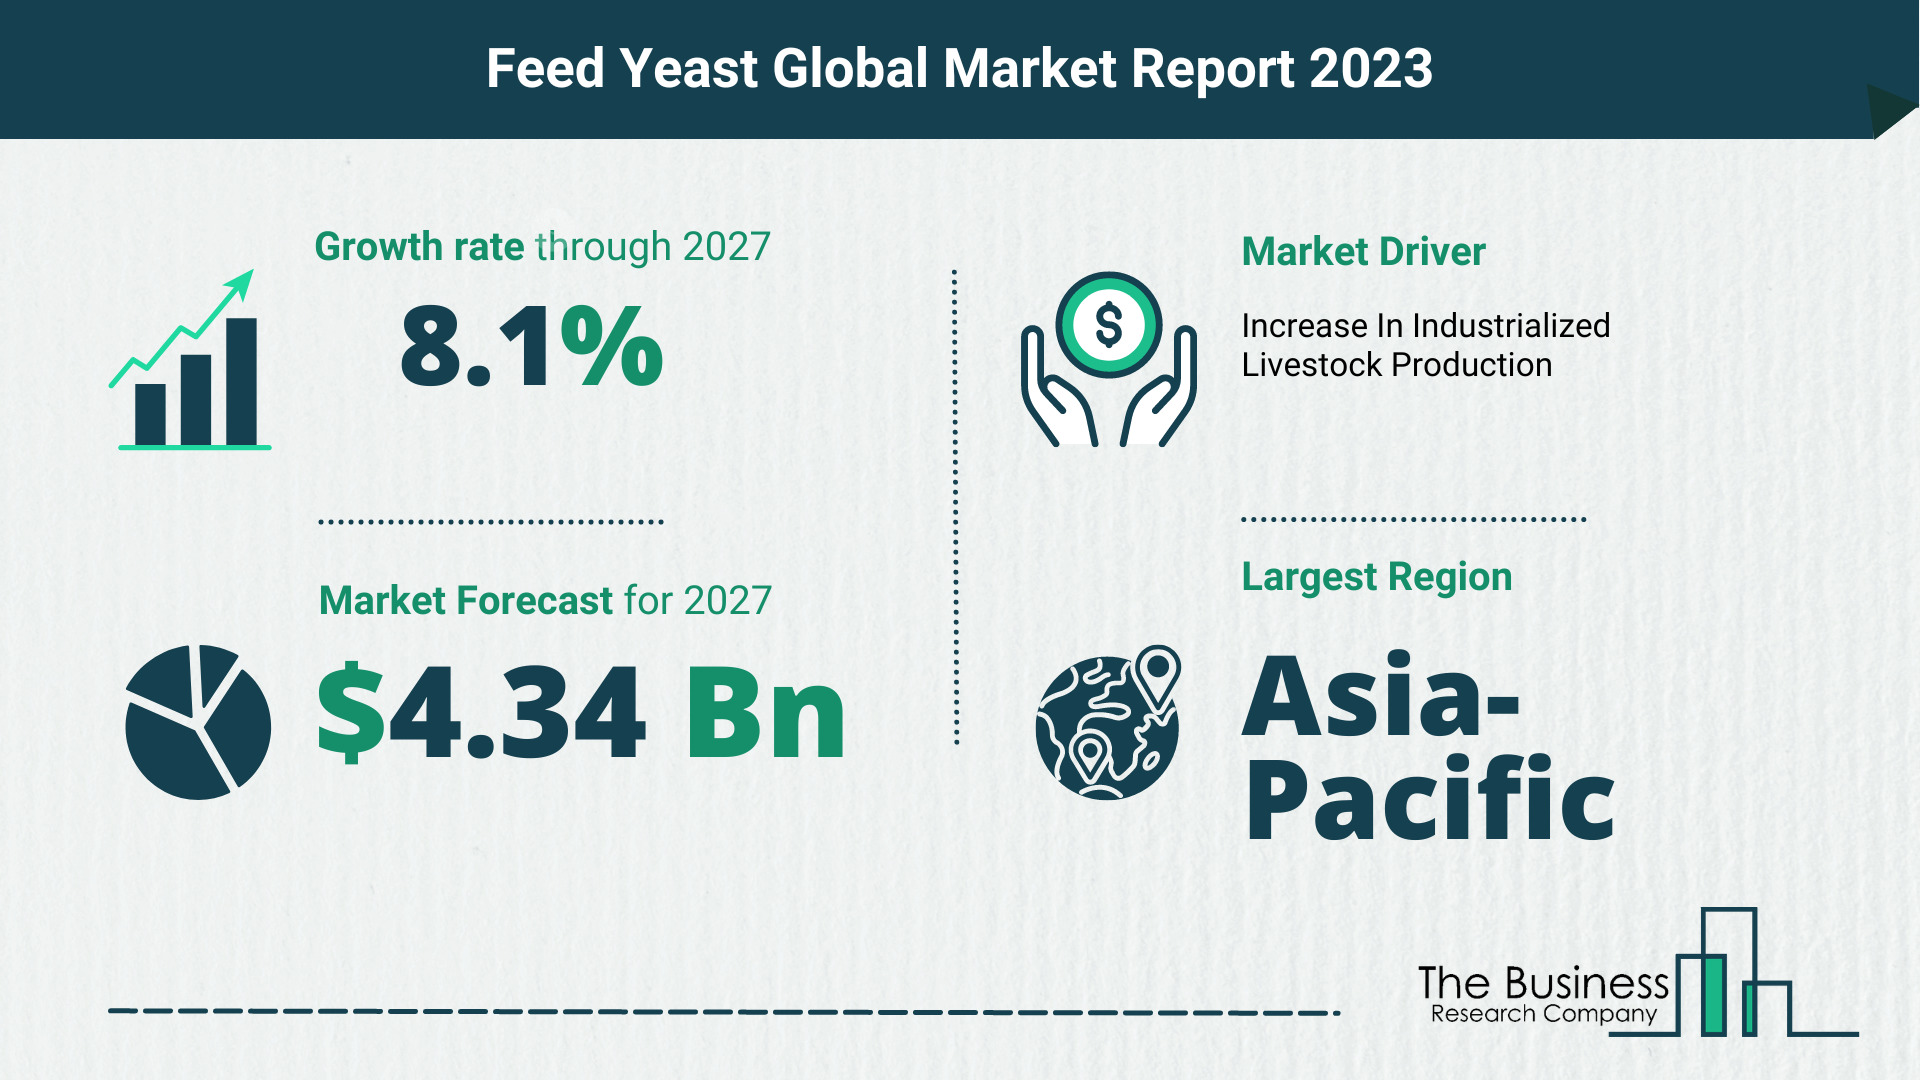 Global Feed Yeast Market